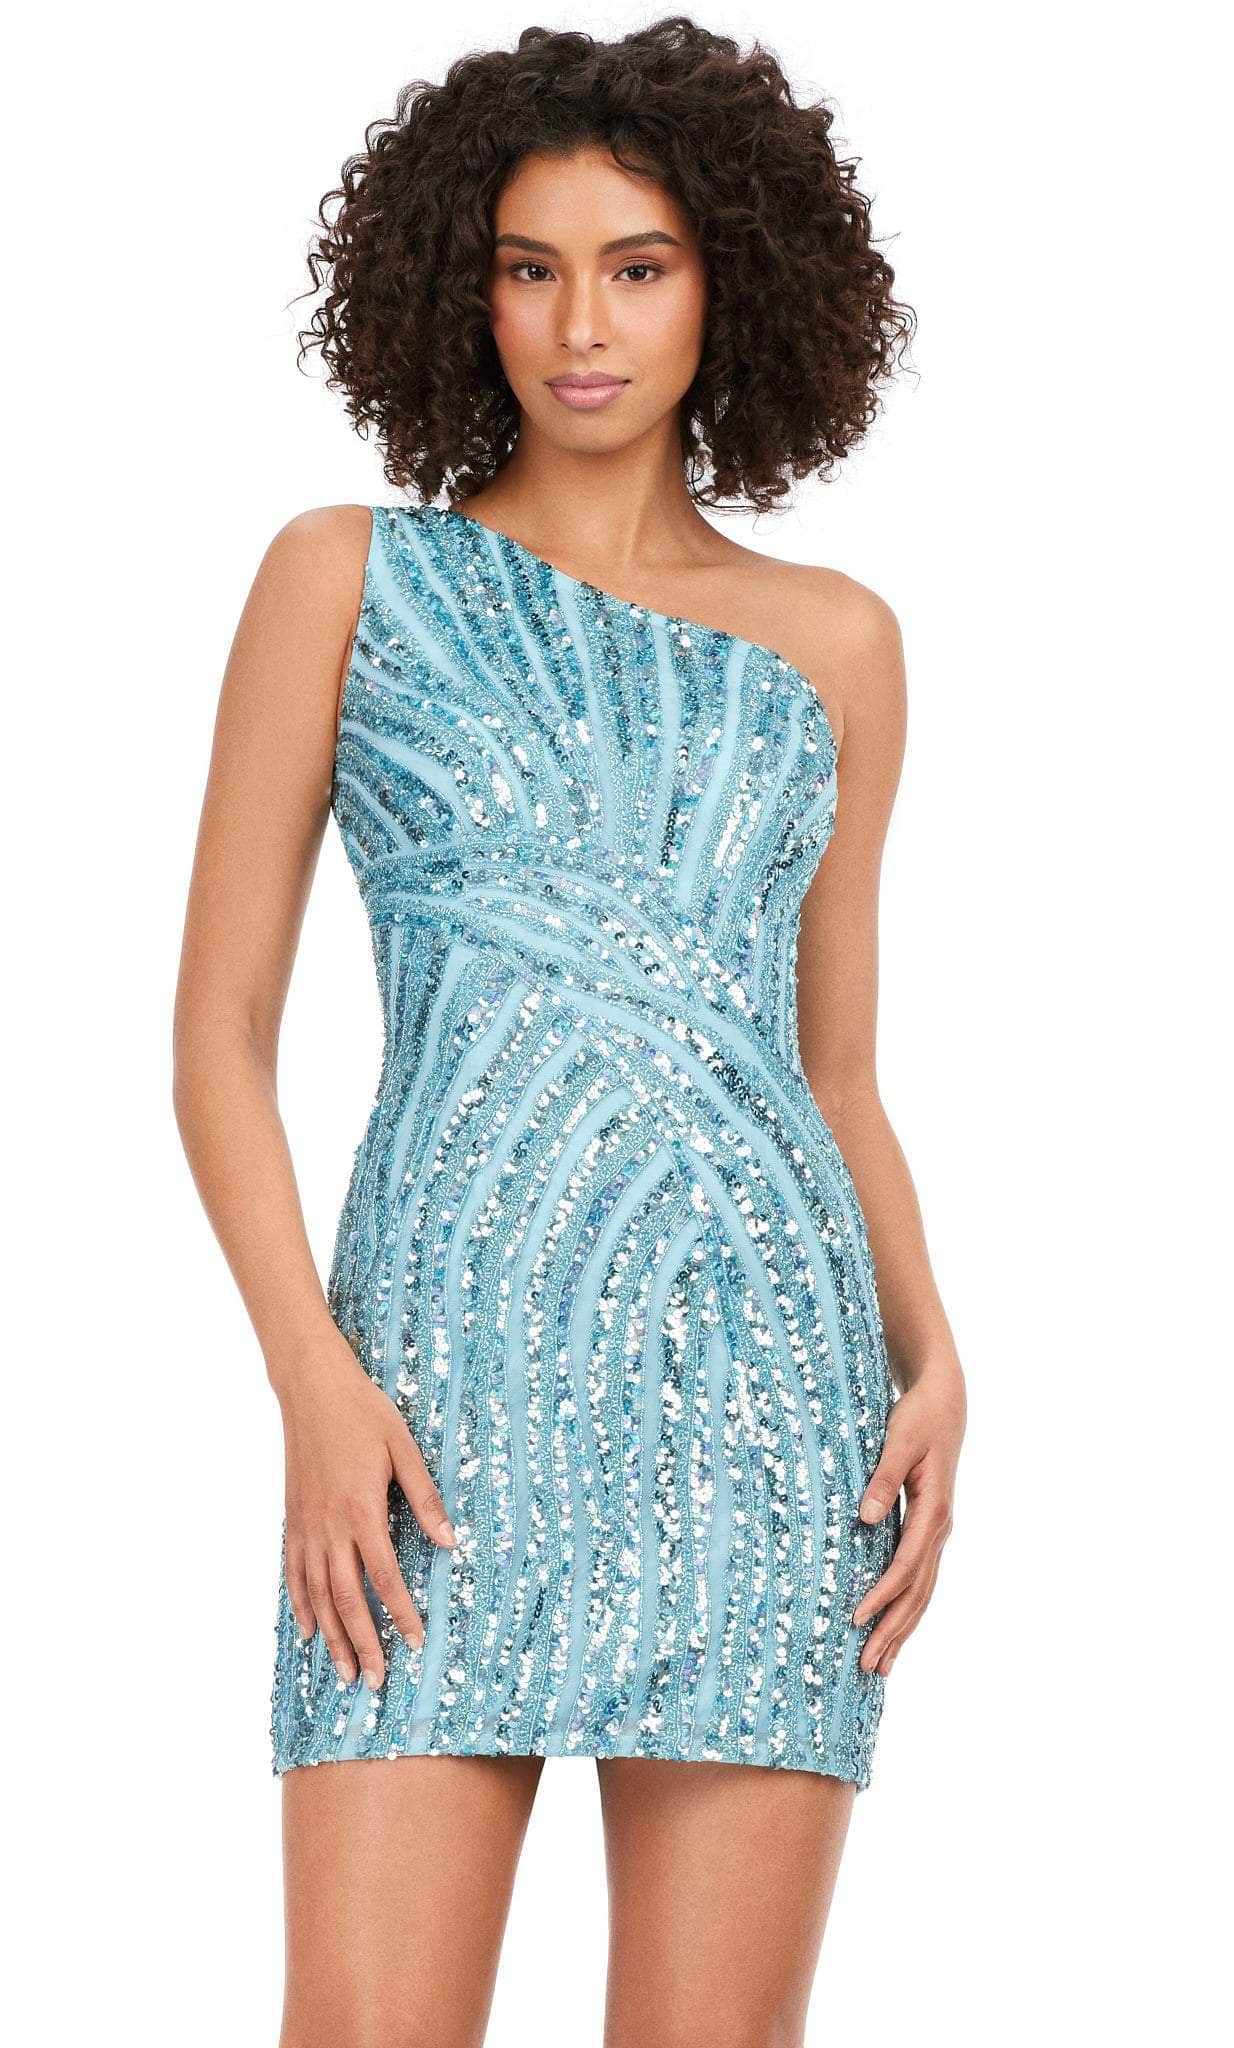 ashley lauren 4627 - one shoulder dress